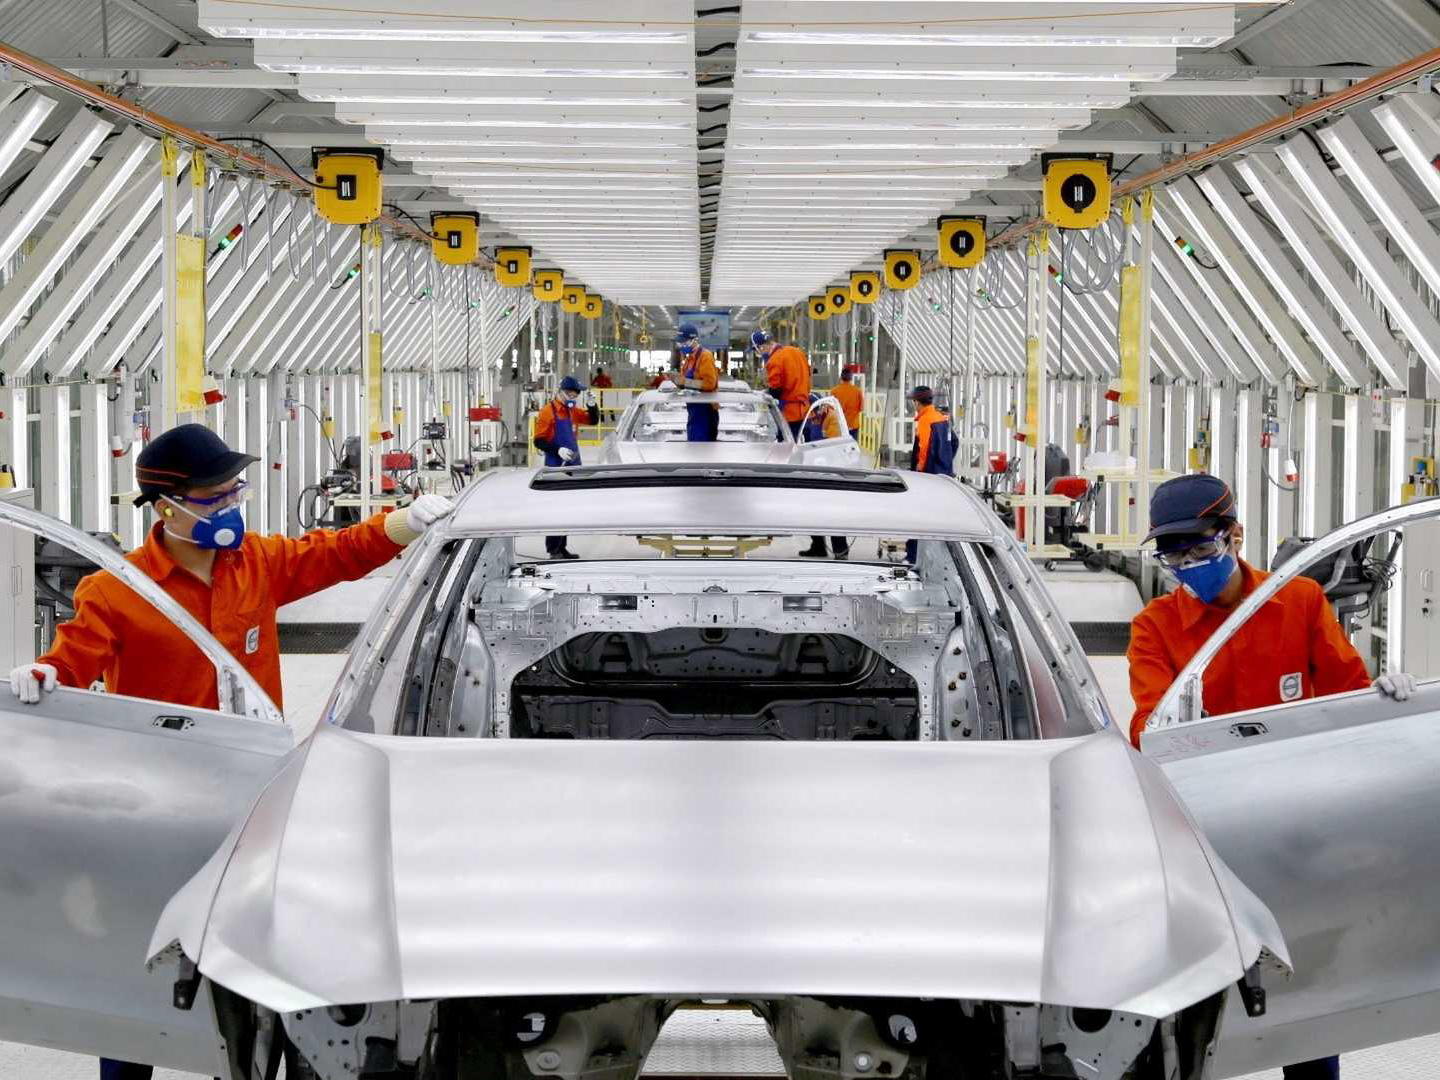 1-مدیر ارشد ولوو: چینی ها خودروی بهتری نسبت به اروپایی ها تولید می کنند.